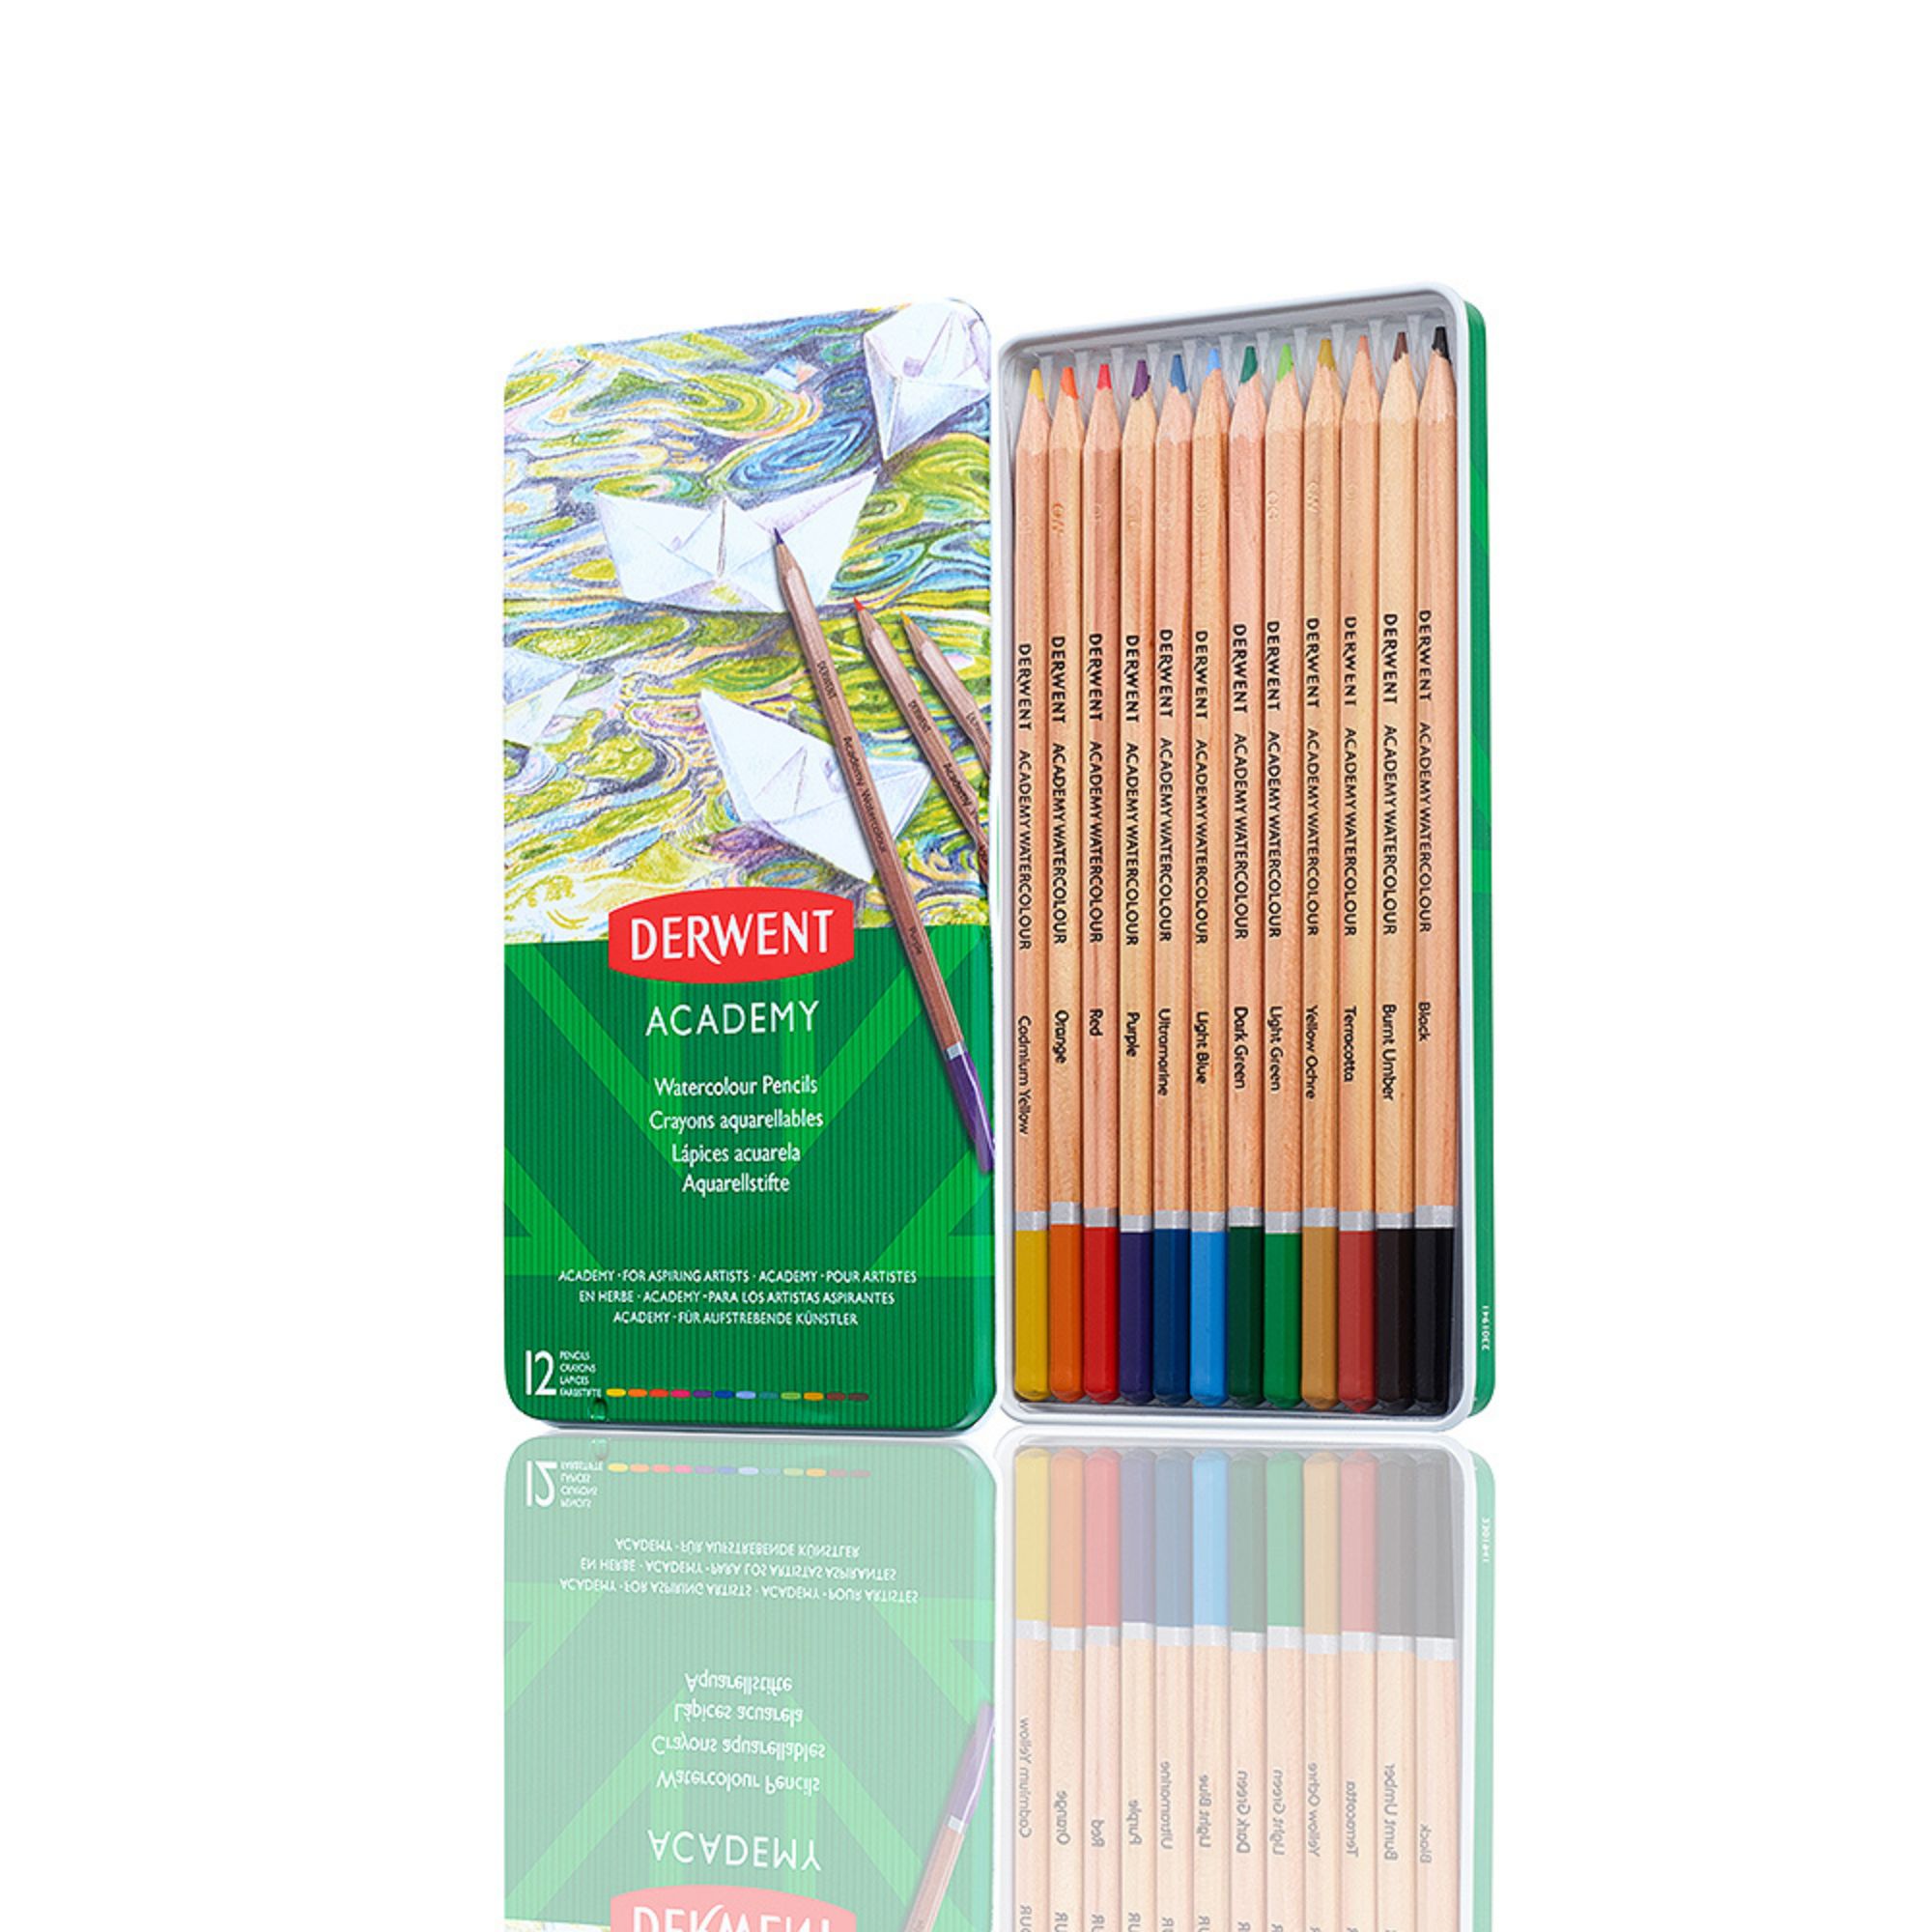 Derwent 2301941 Academy Watercolor Pencils